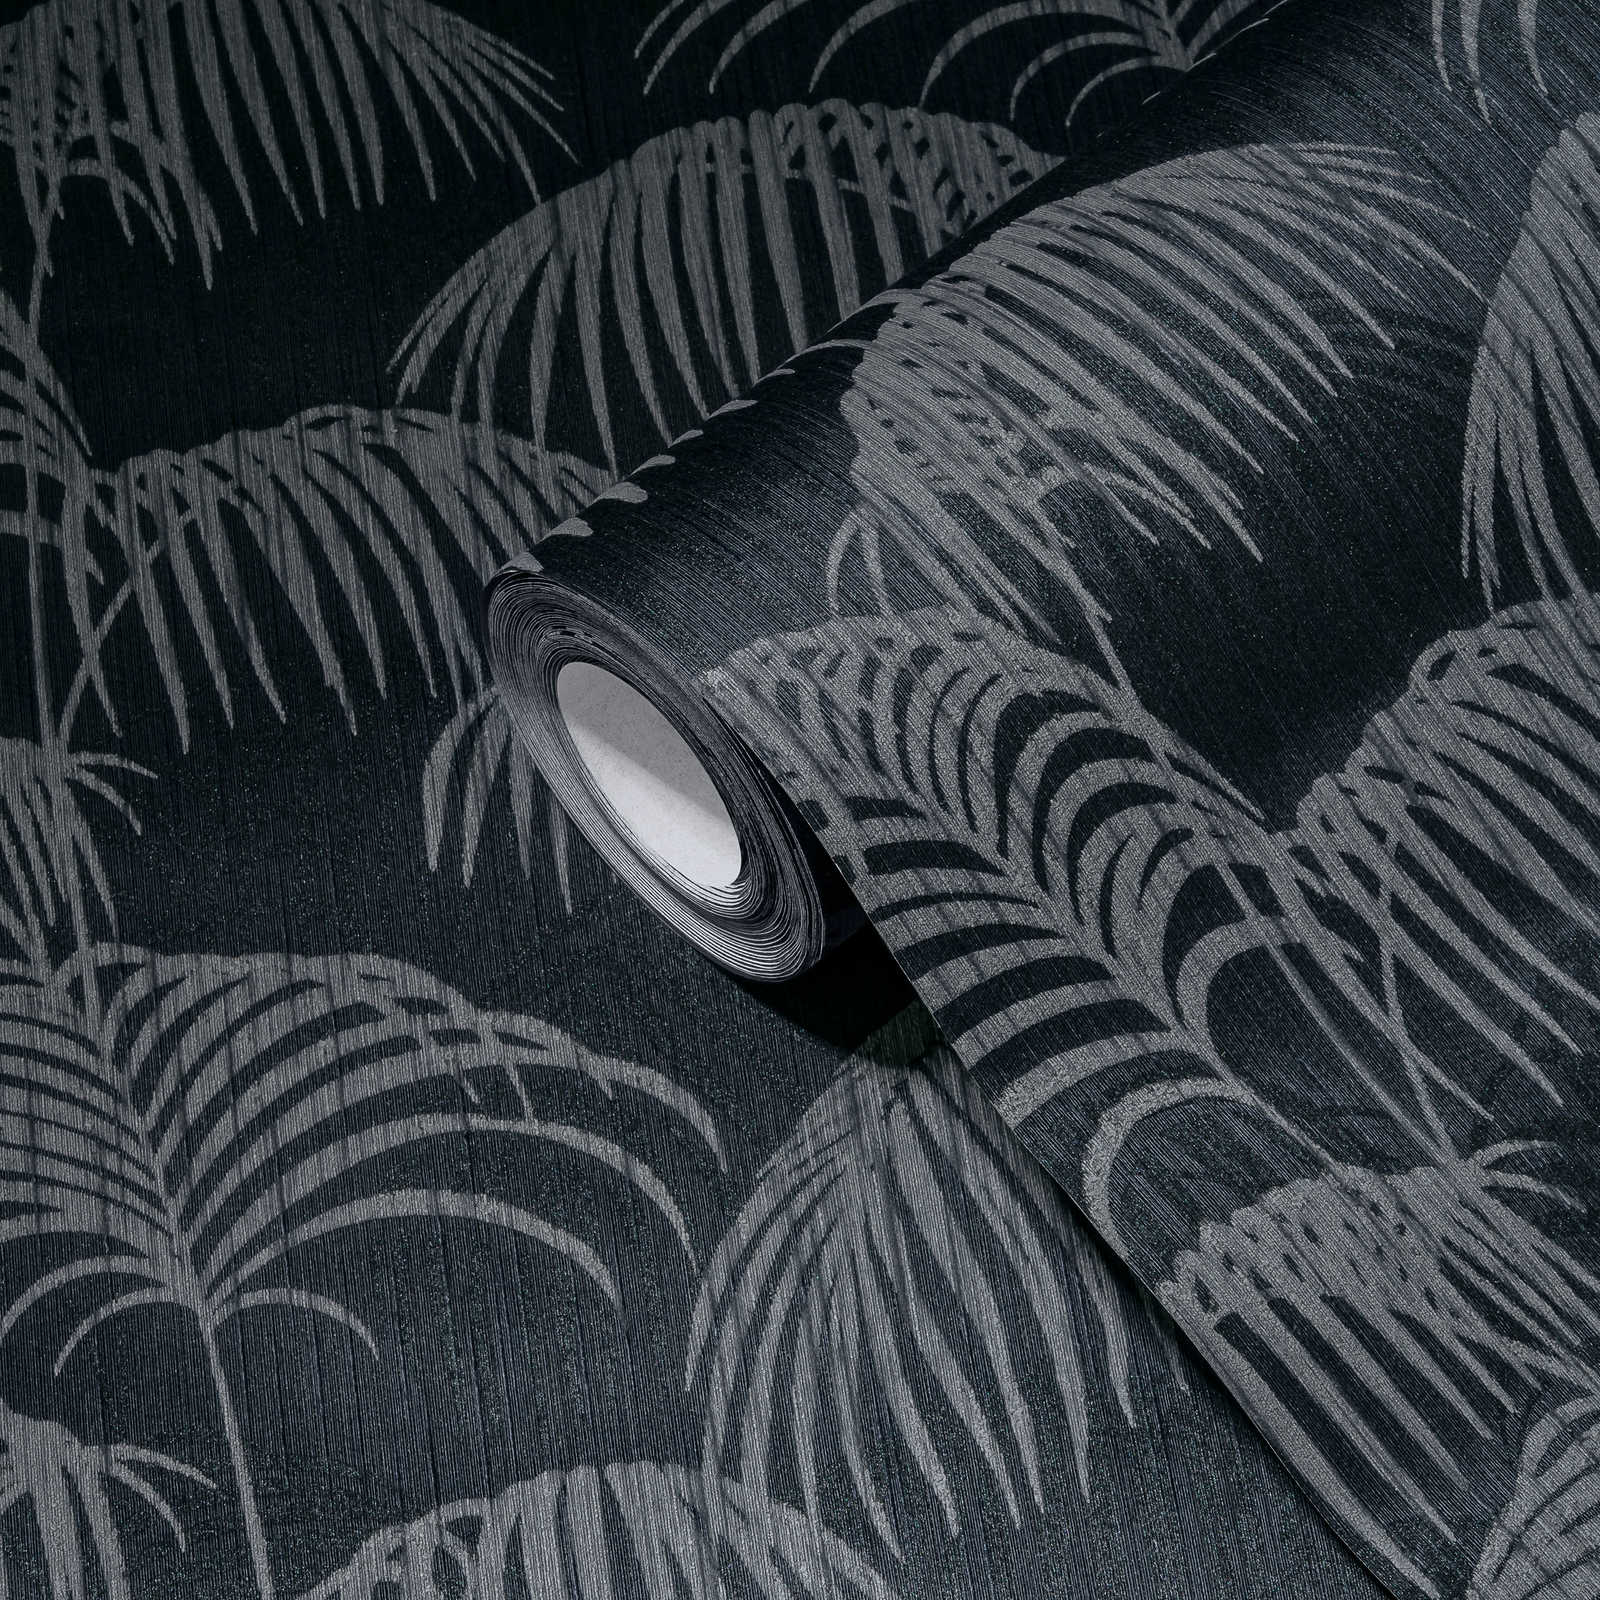             Tapete Palmblätter Natur Muster mit Tiefeneffekt – Grau, Schwarz
        